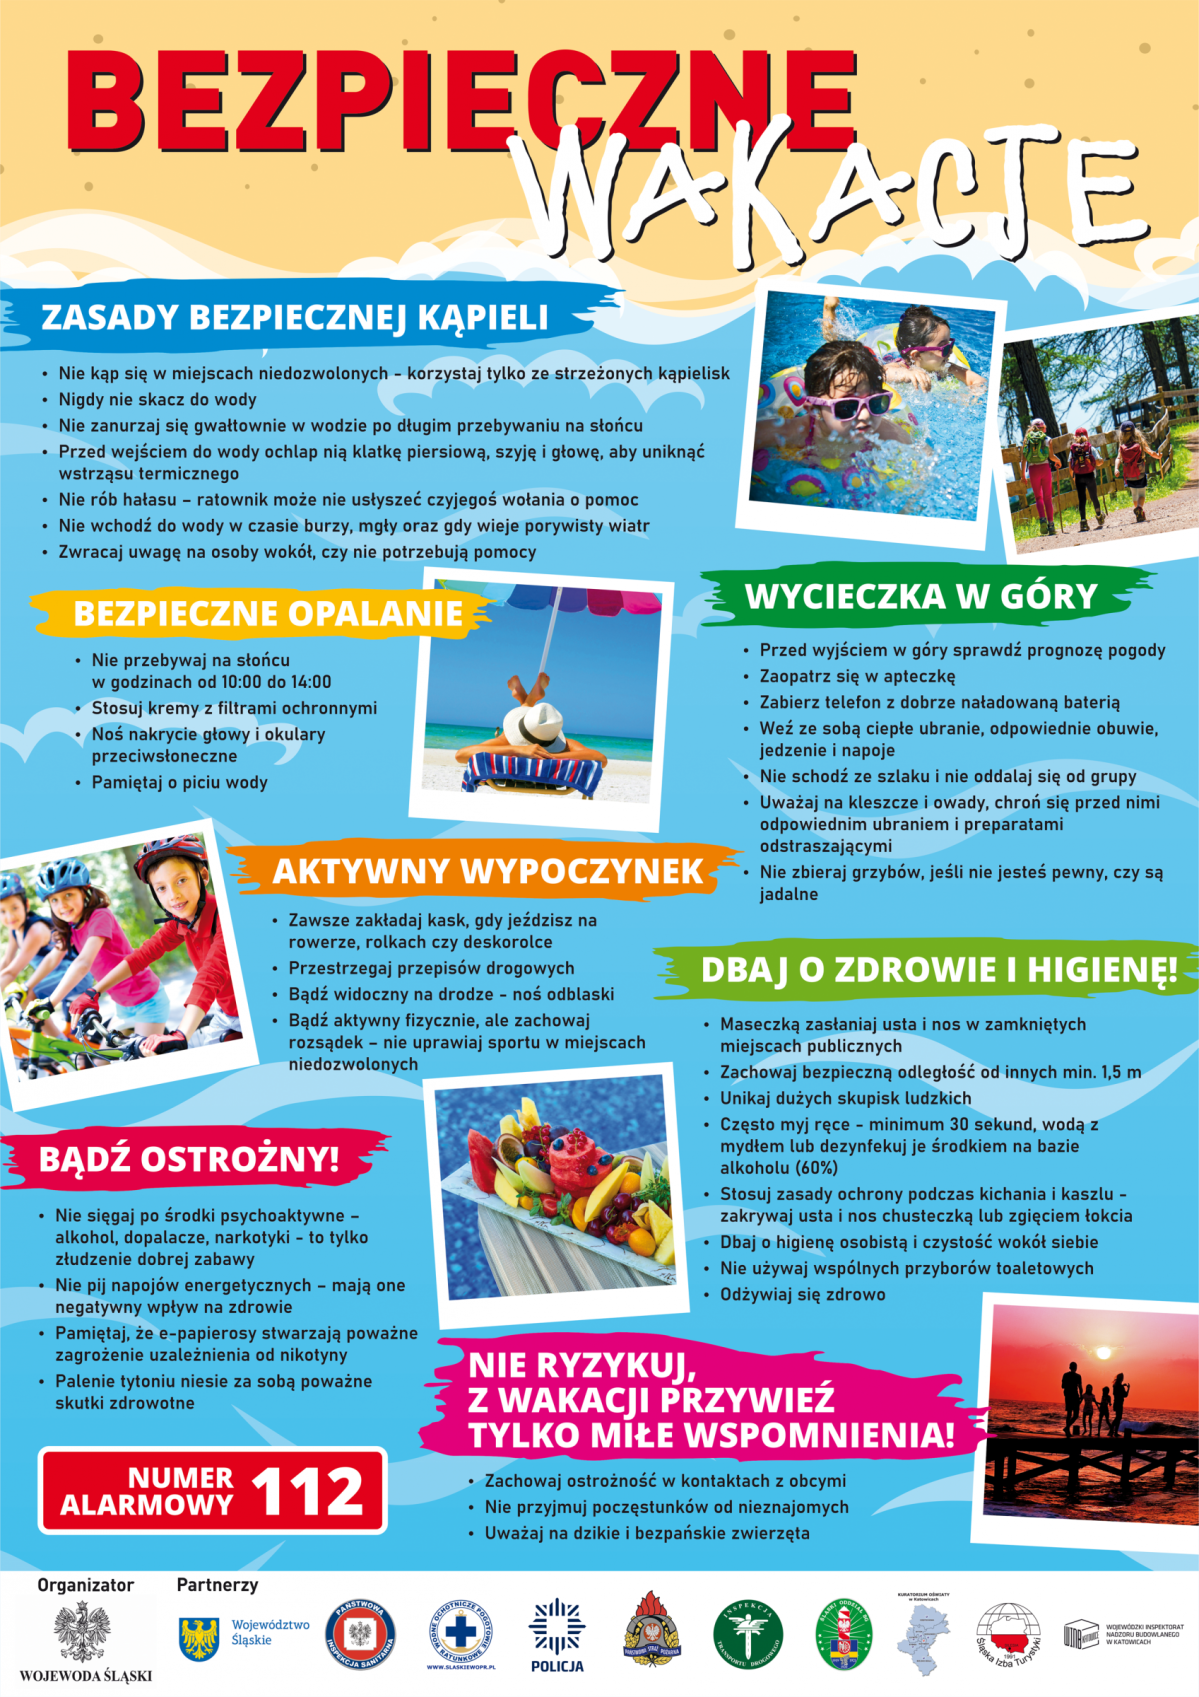 Plakat opisuje zasady spędzenia bezpiecznych wakacji.